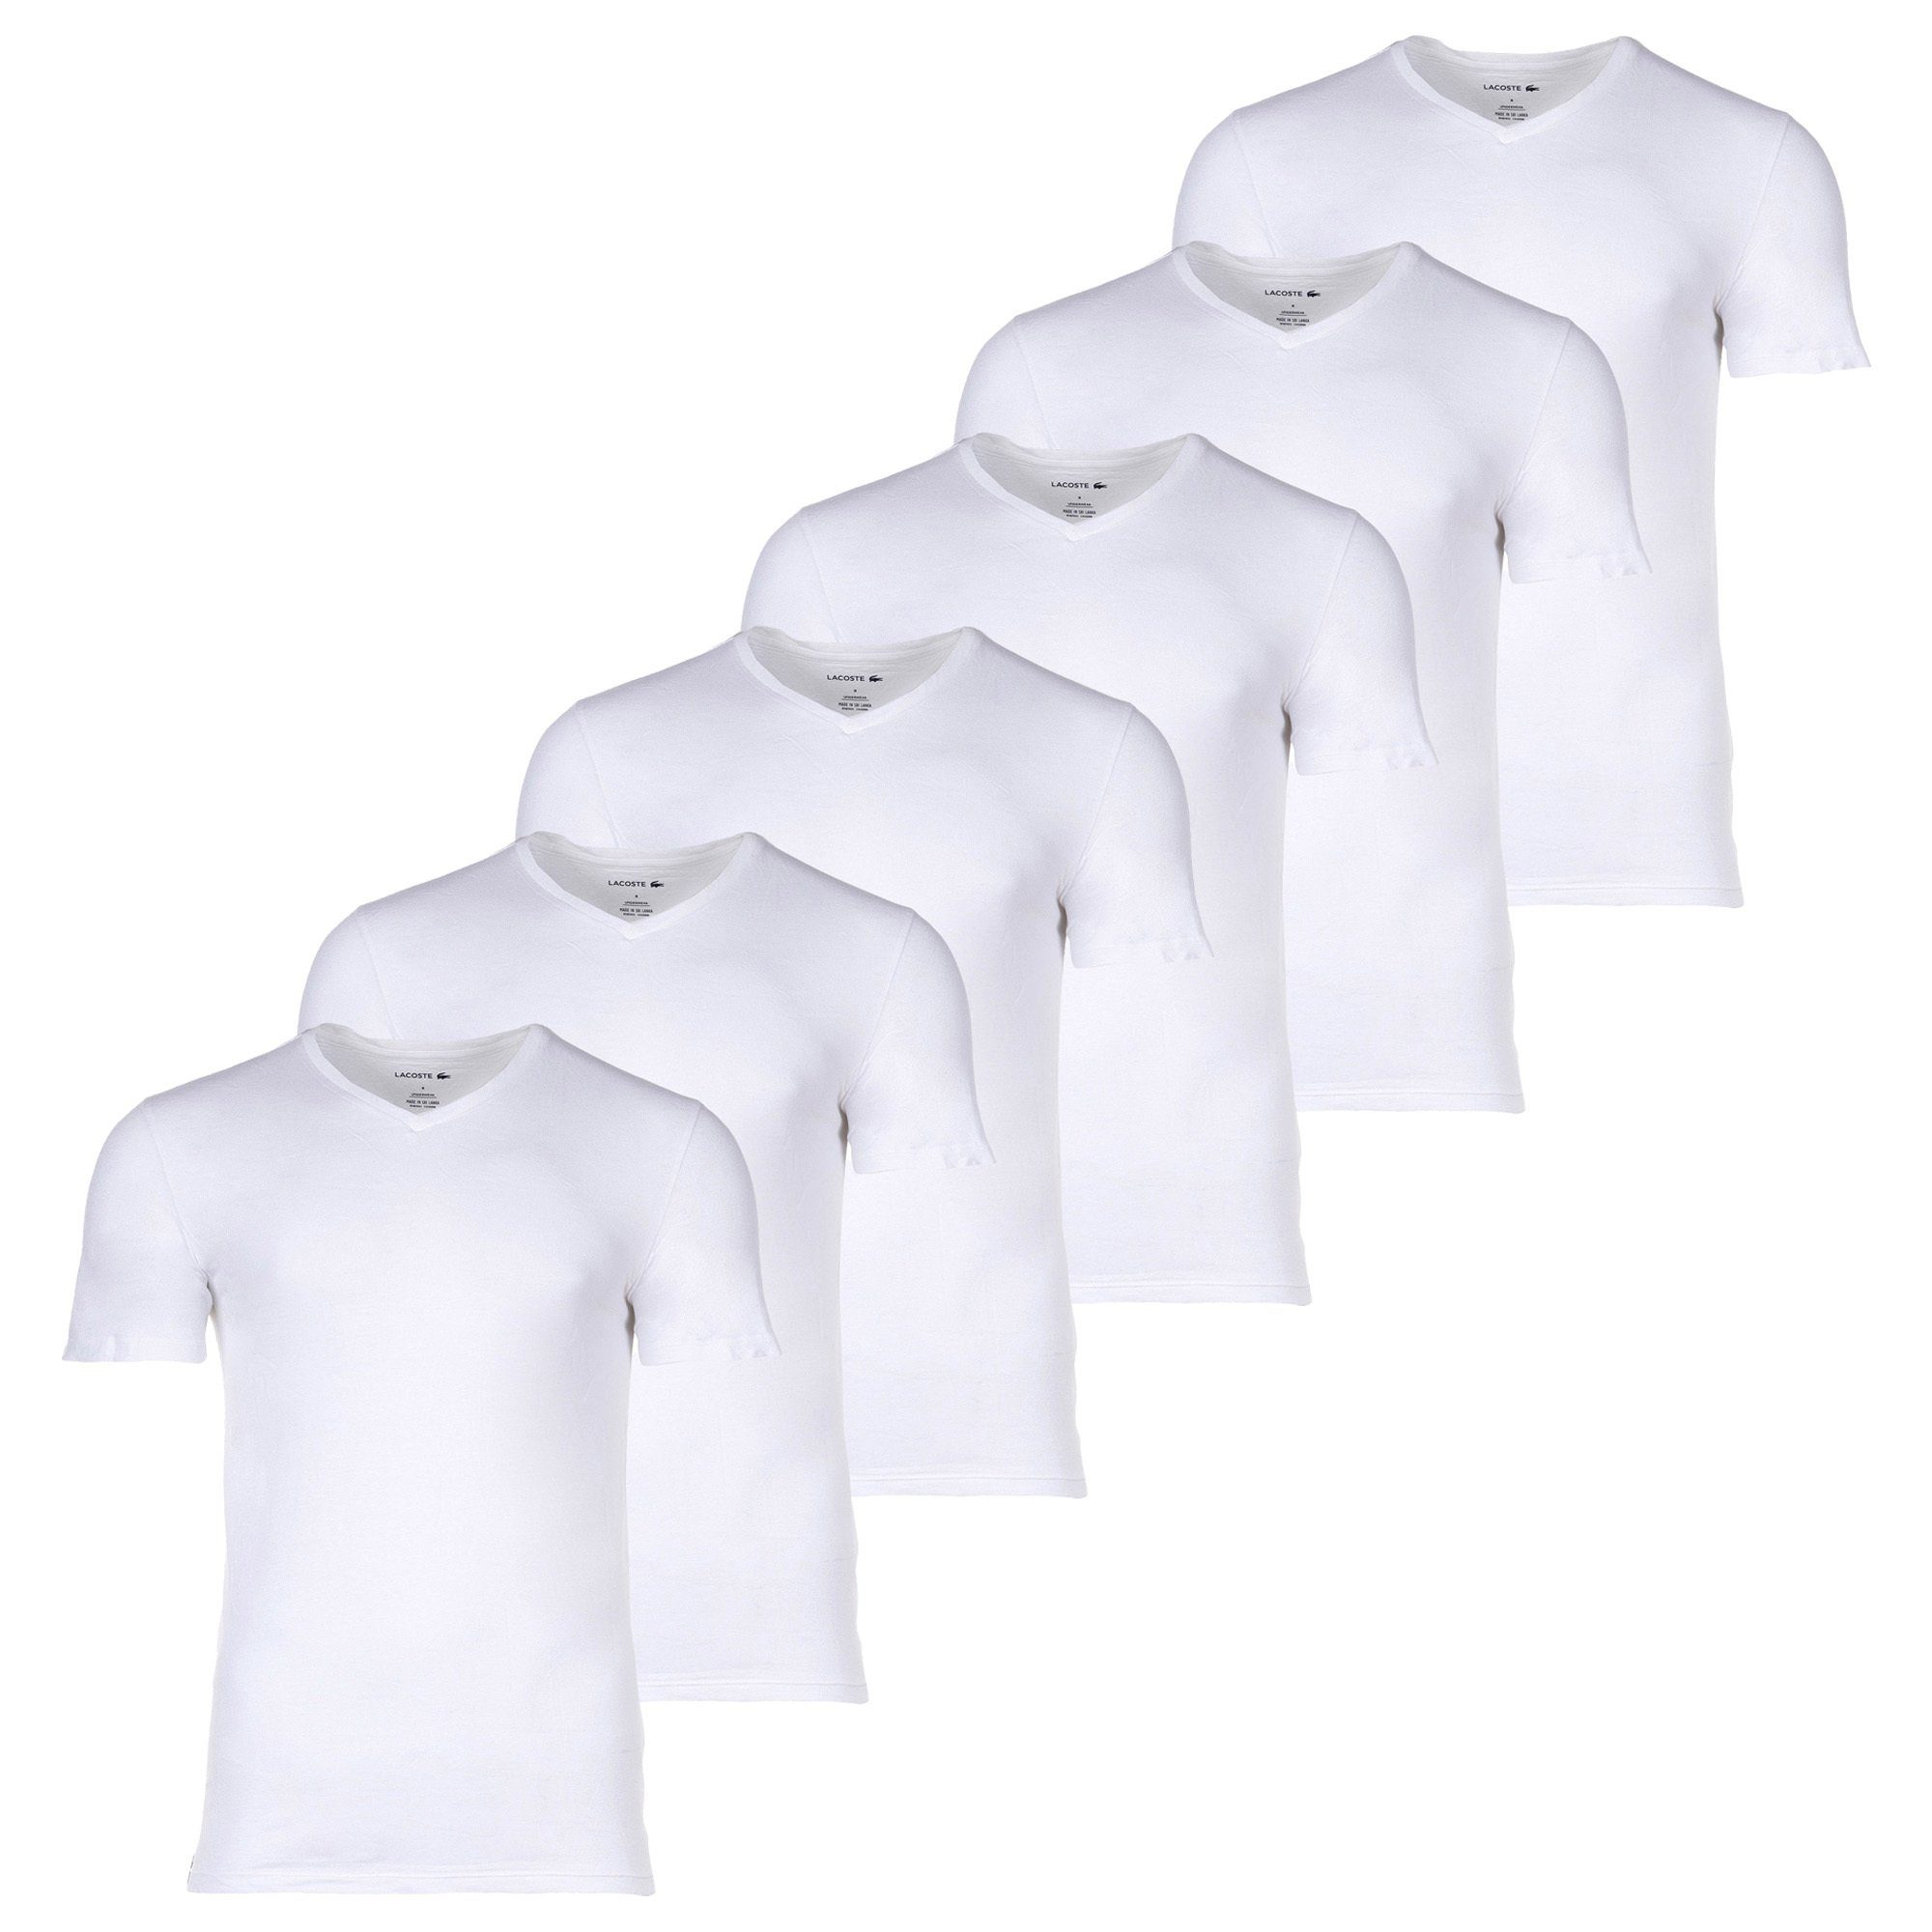 Lacoste Herren 6er T-Shirt - Weiß Pack Essentials T-Shirts,